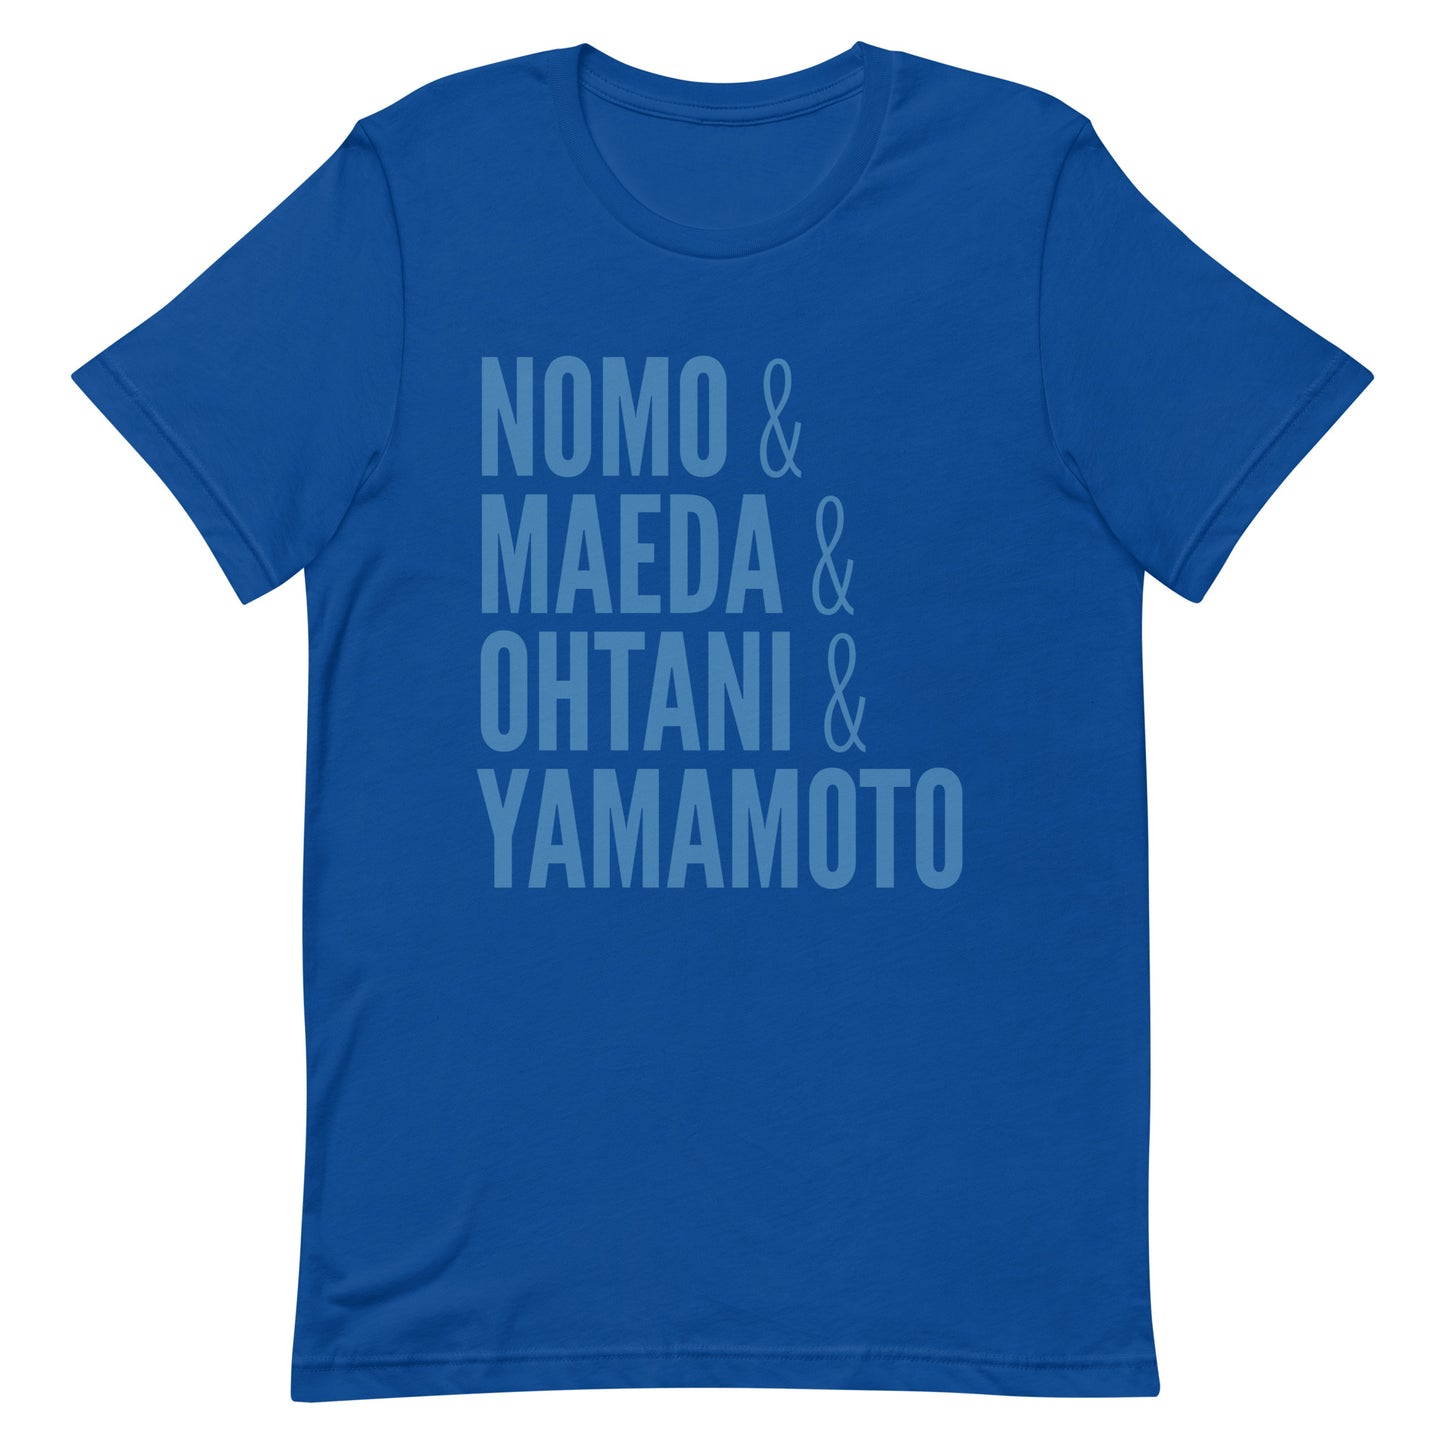 Nomo & Maeda & Ohtani & Yamamoto